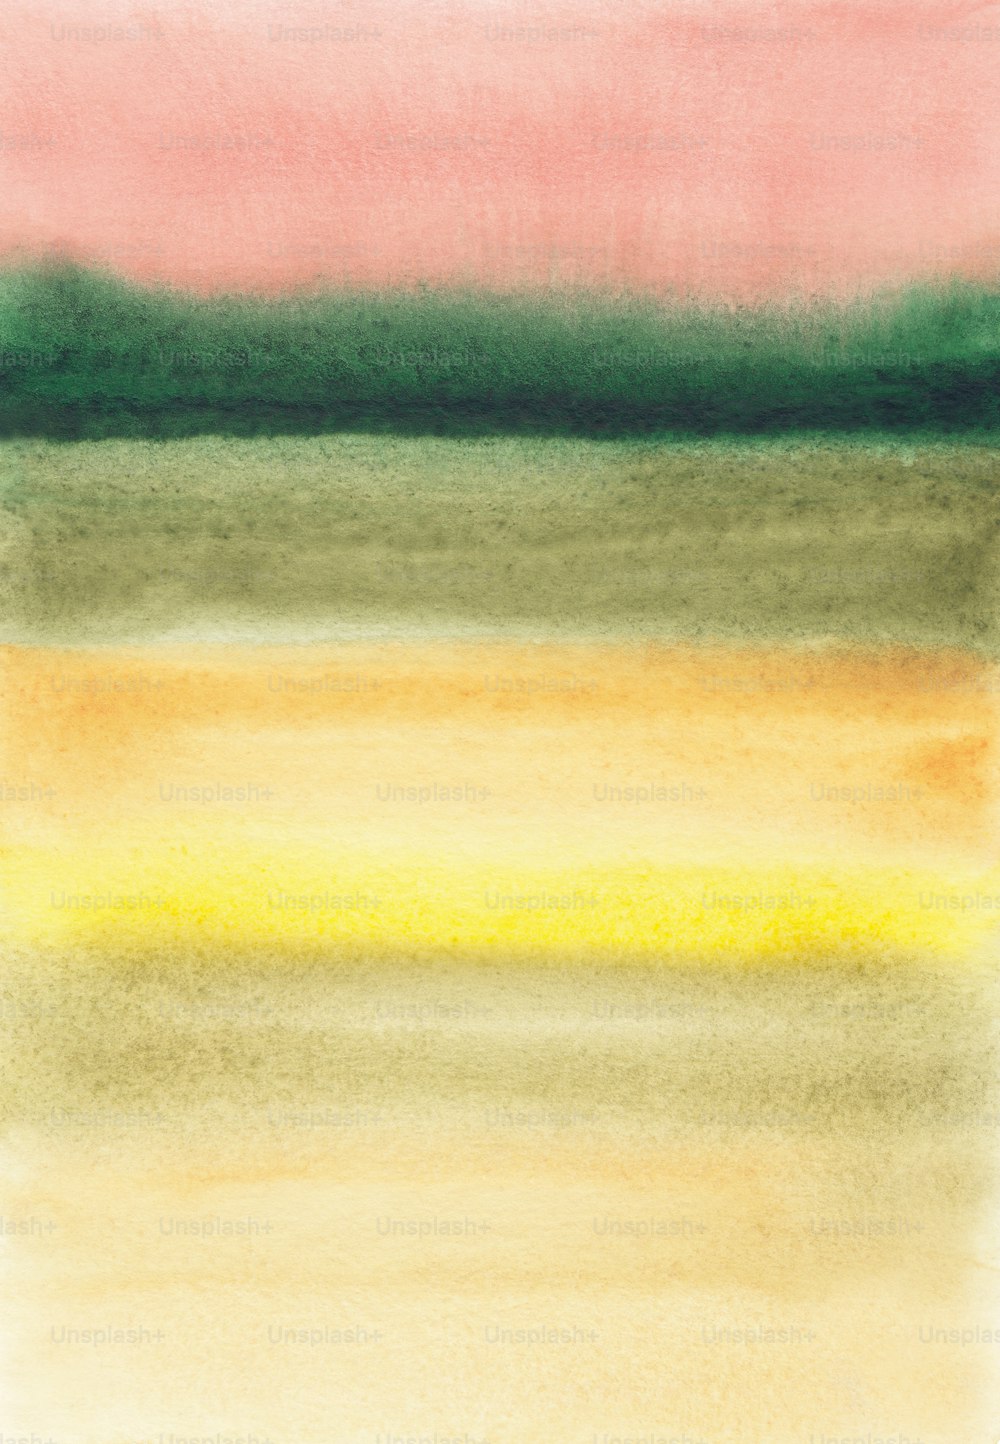 Un dipinto ad acquerello di un orizzonte verde, giallo e rosa